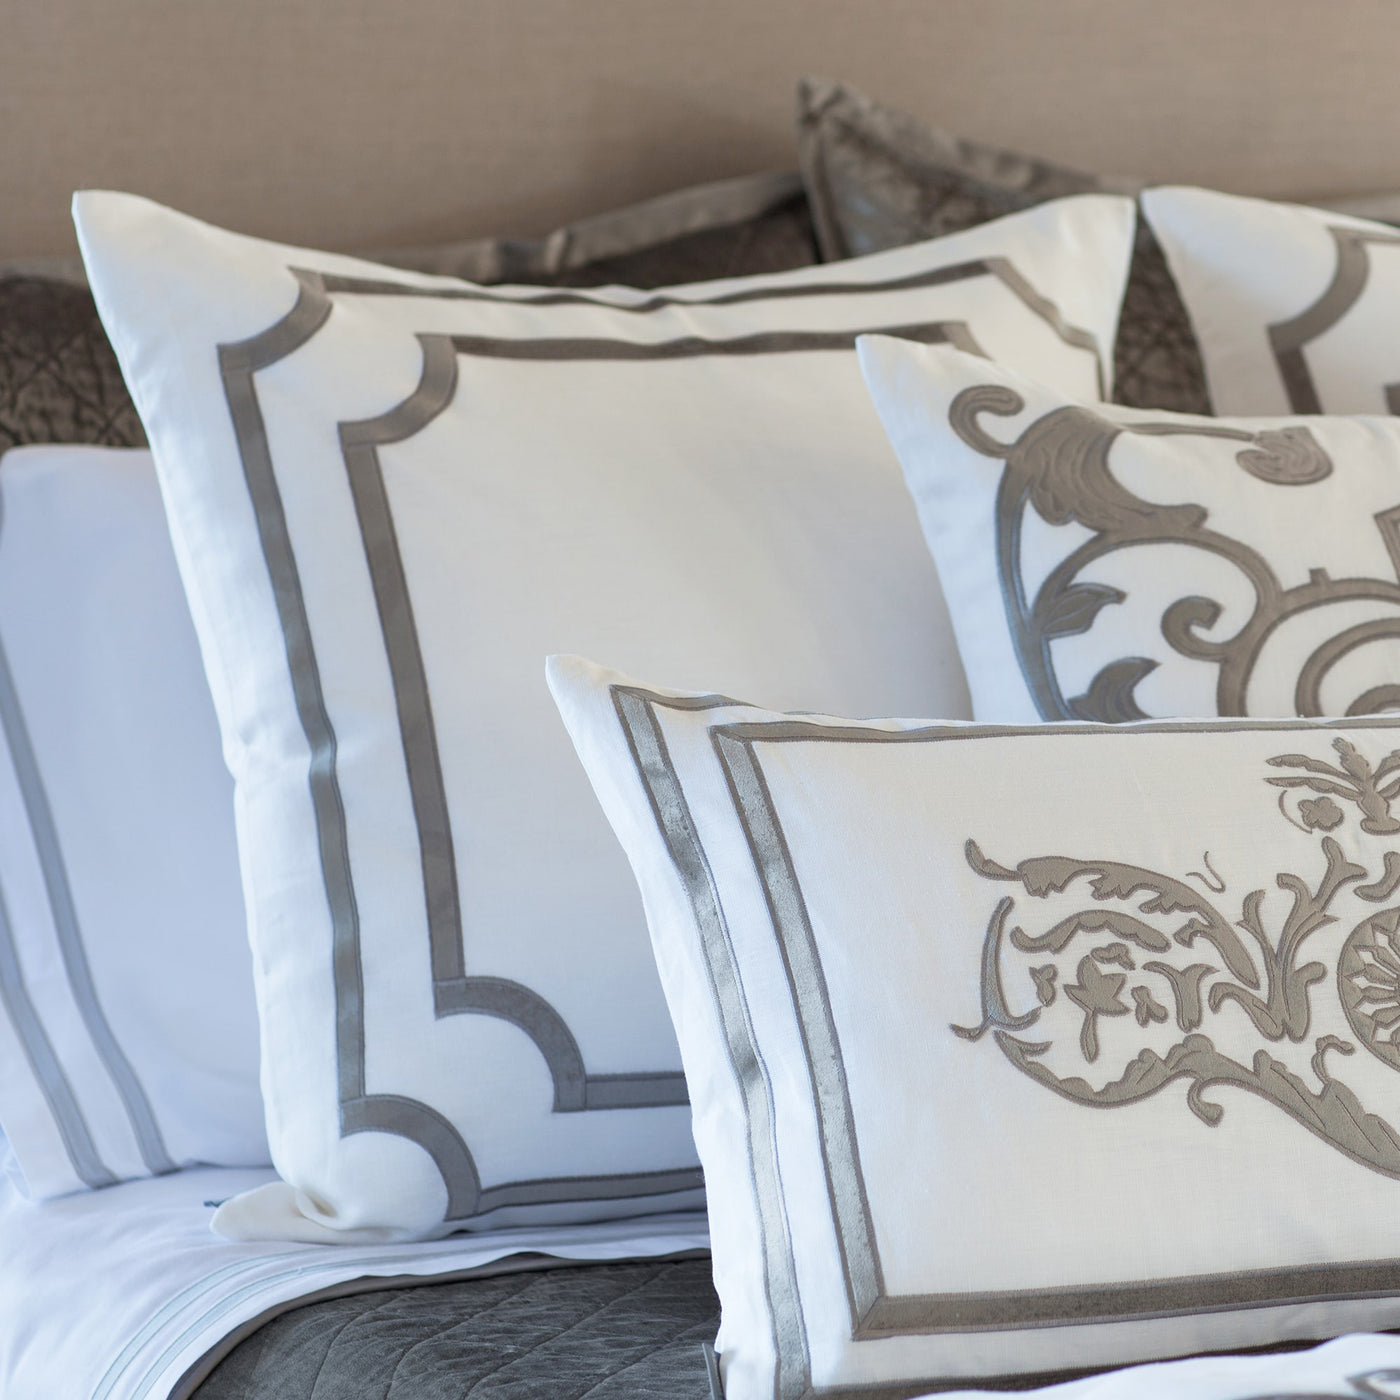 Soho European Pillow / White Linen / Silver Velvet 26X26